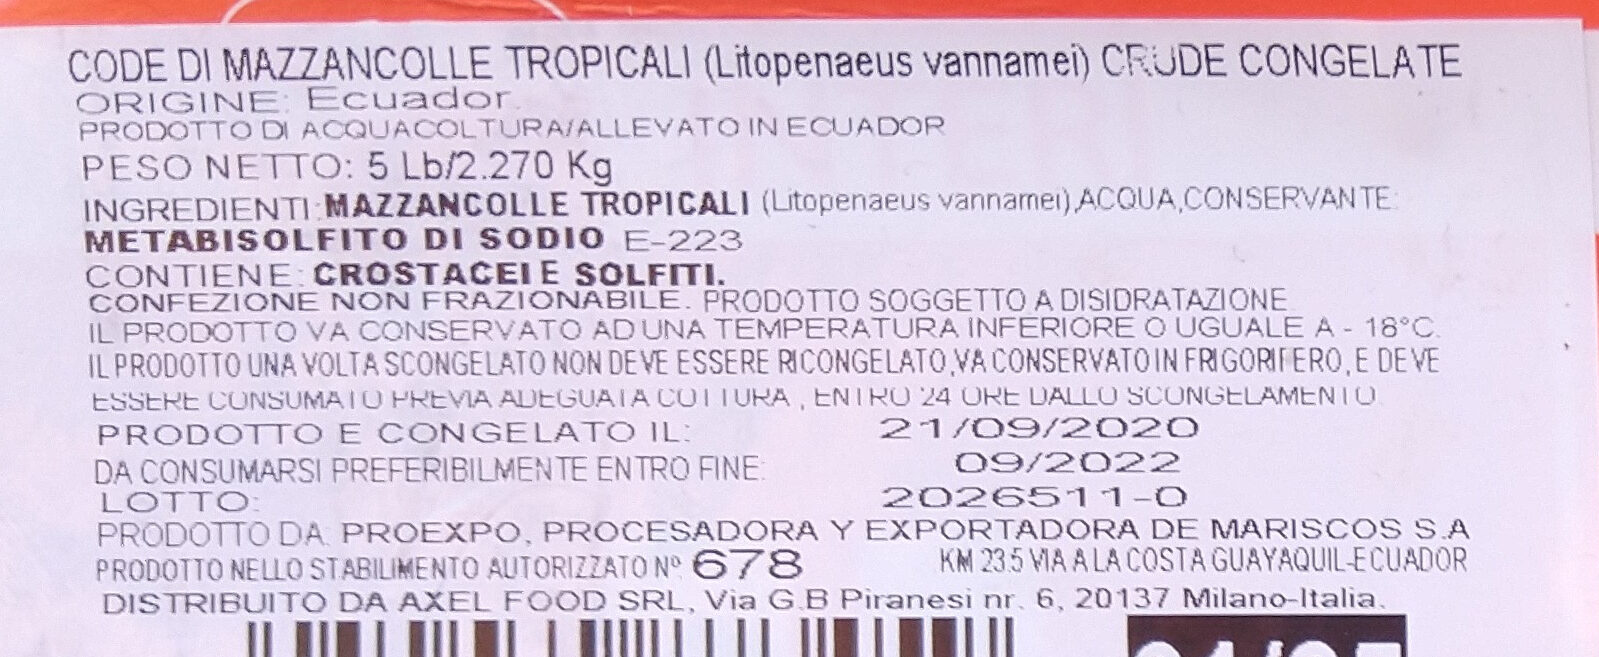 Mazzancolle tropicali crude congelate - Ingredienti